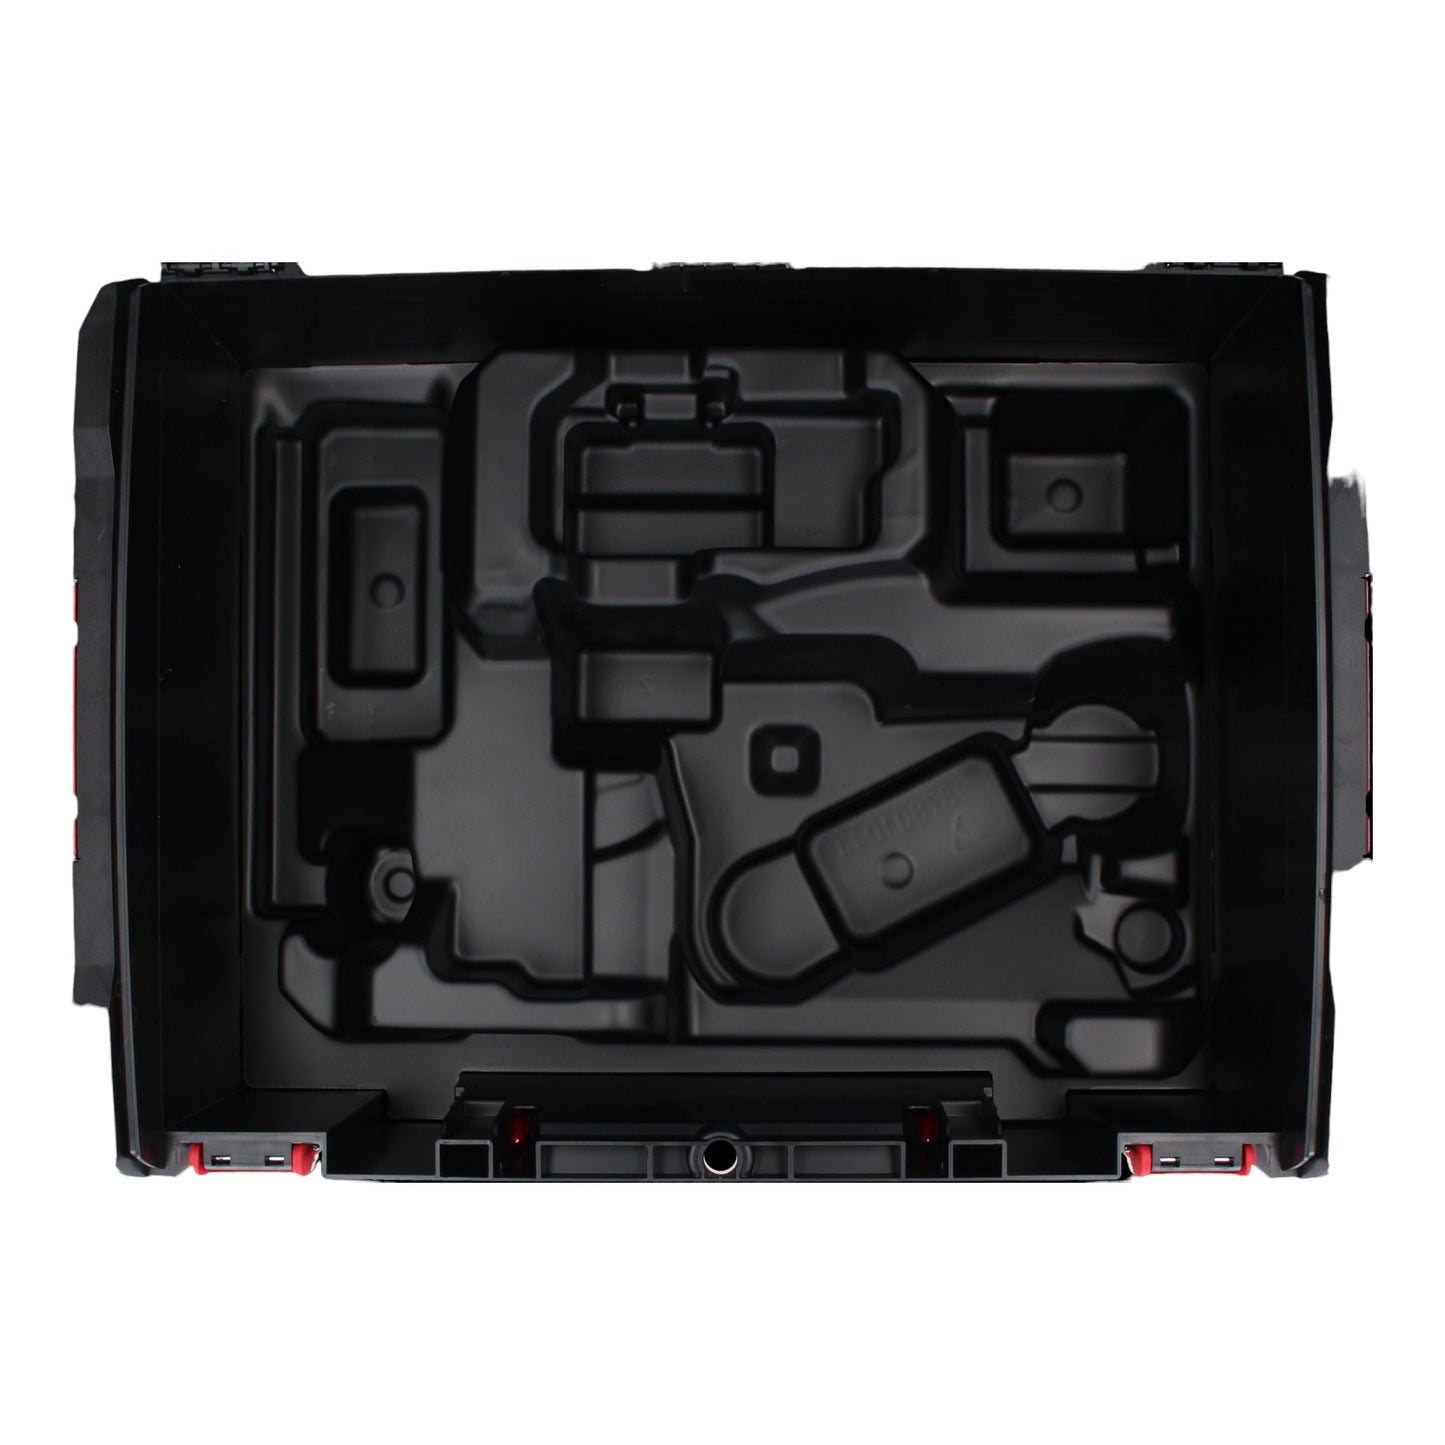 Milwaukee HD Box Gr. 3 System Werkzeug Koffer 475 x 358 x 230 mm + Einlage für Bandschleifer M18 FBTS75